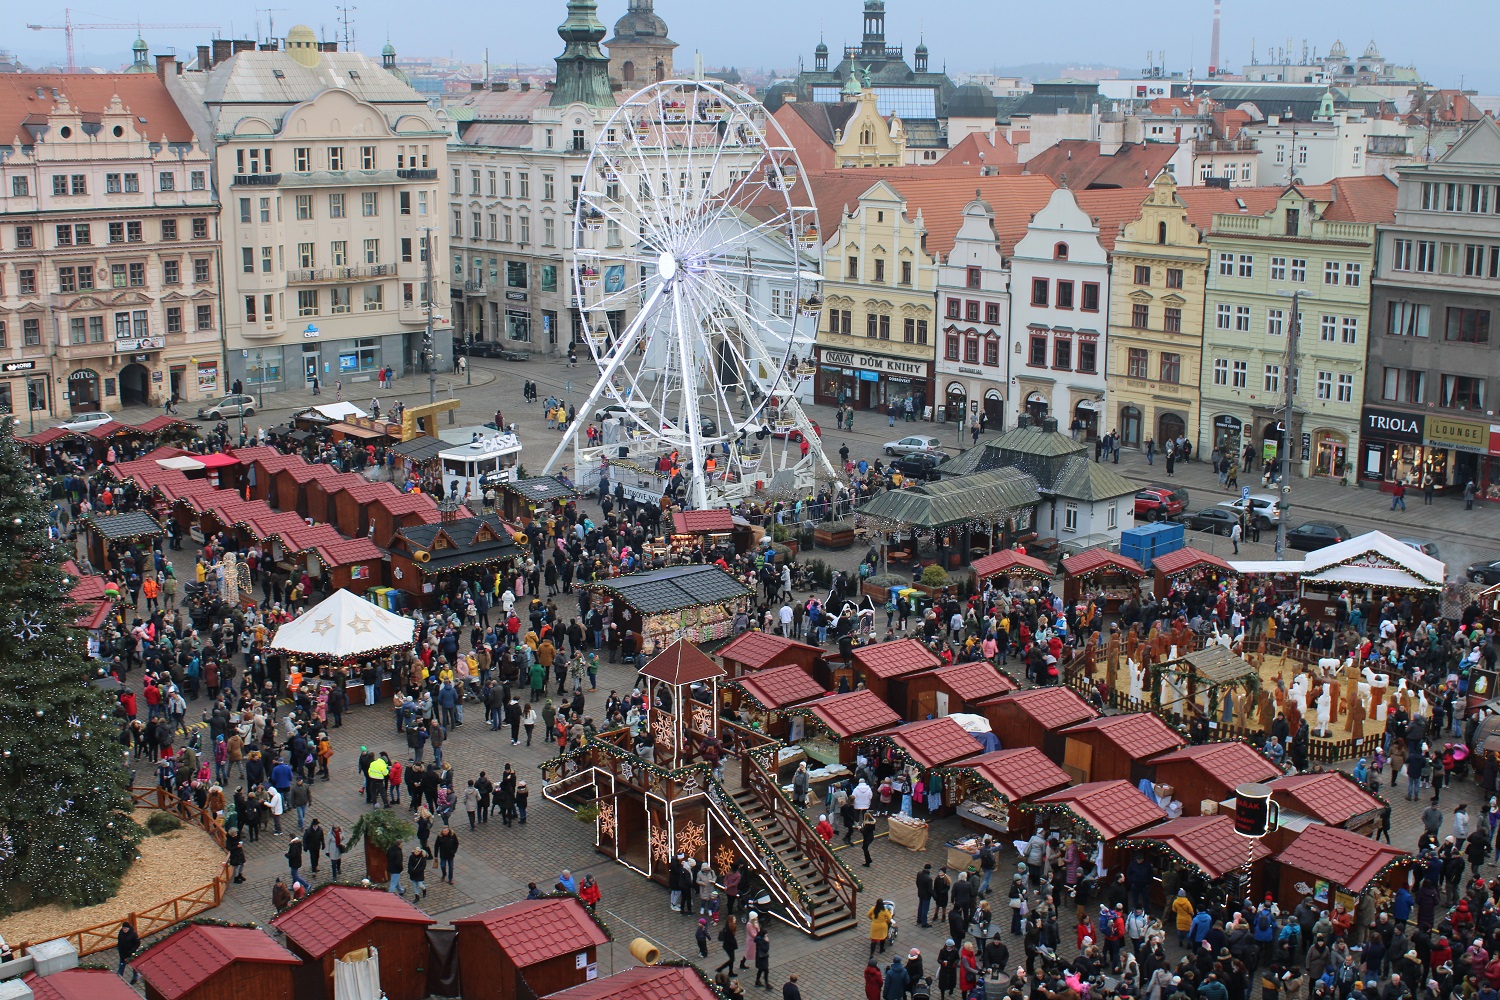 Zahlreiche Stände und ein Riesenrad füllen den großen mittelalterlichen Marktplatz der Stadt. Foto: Tobias Eisch